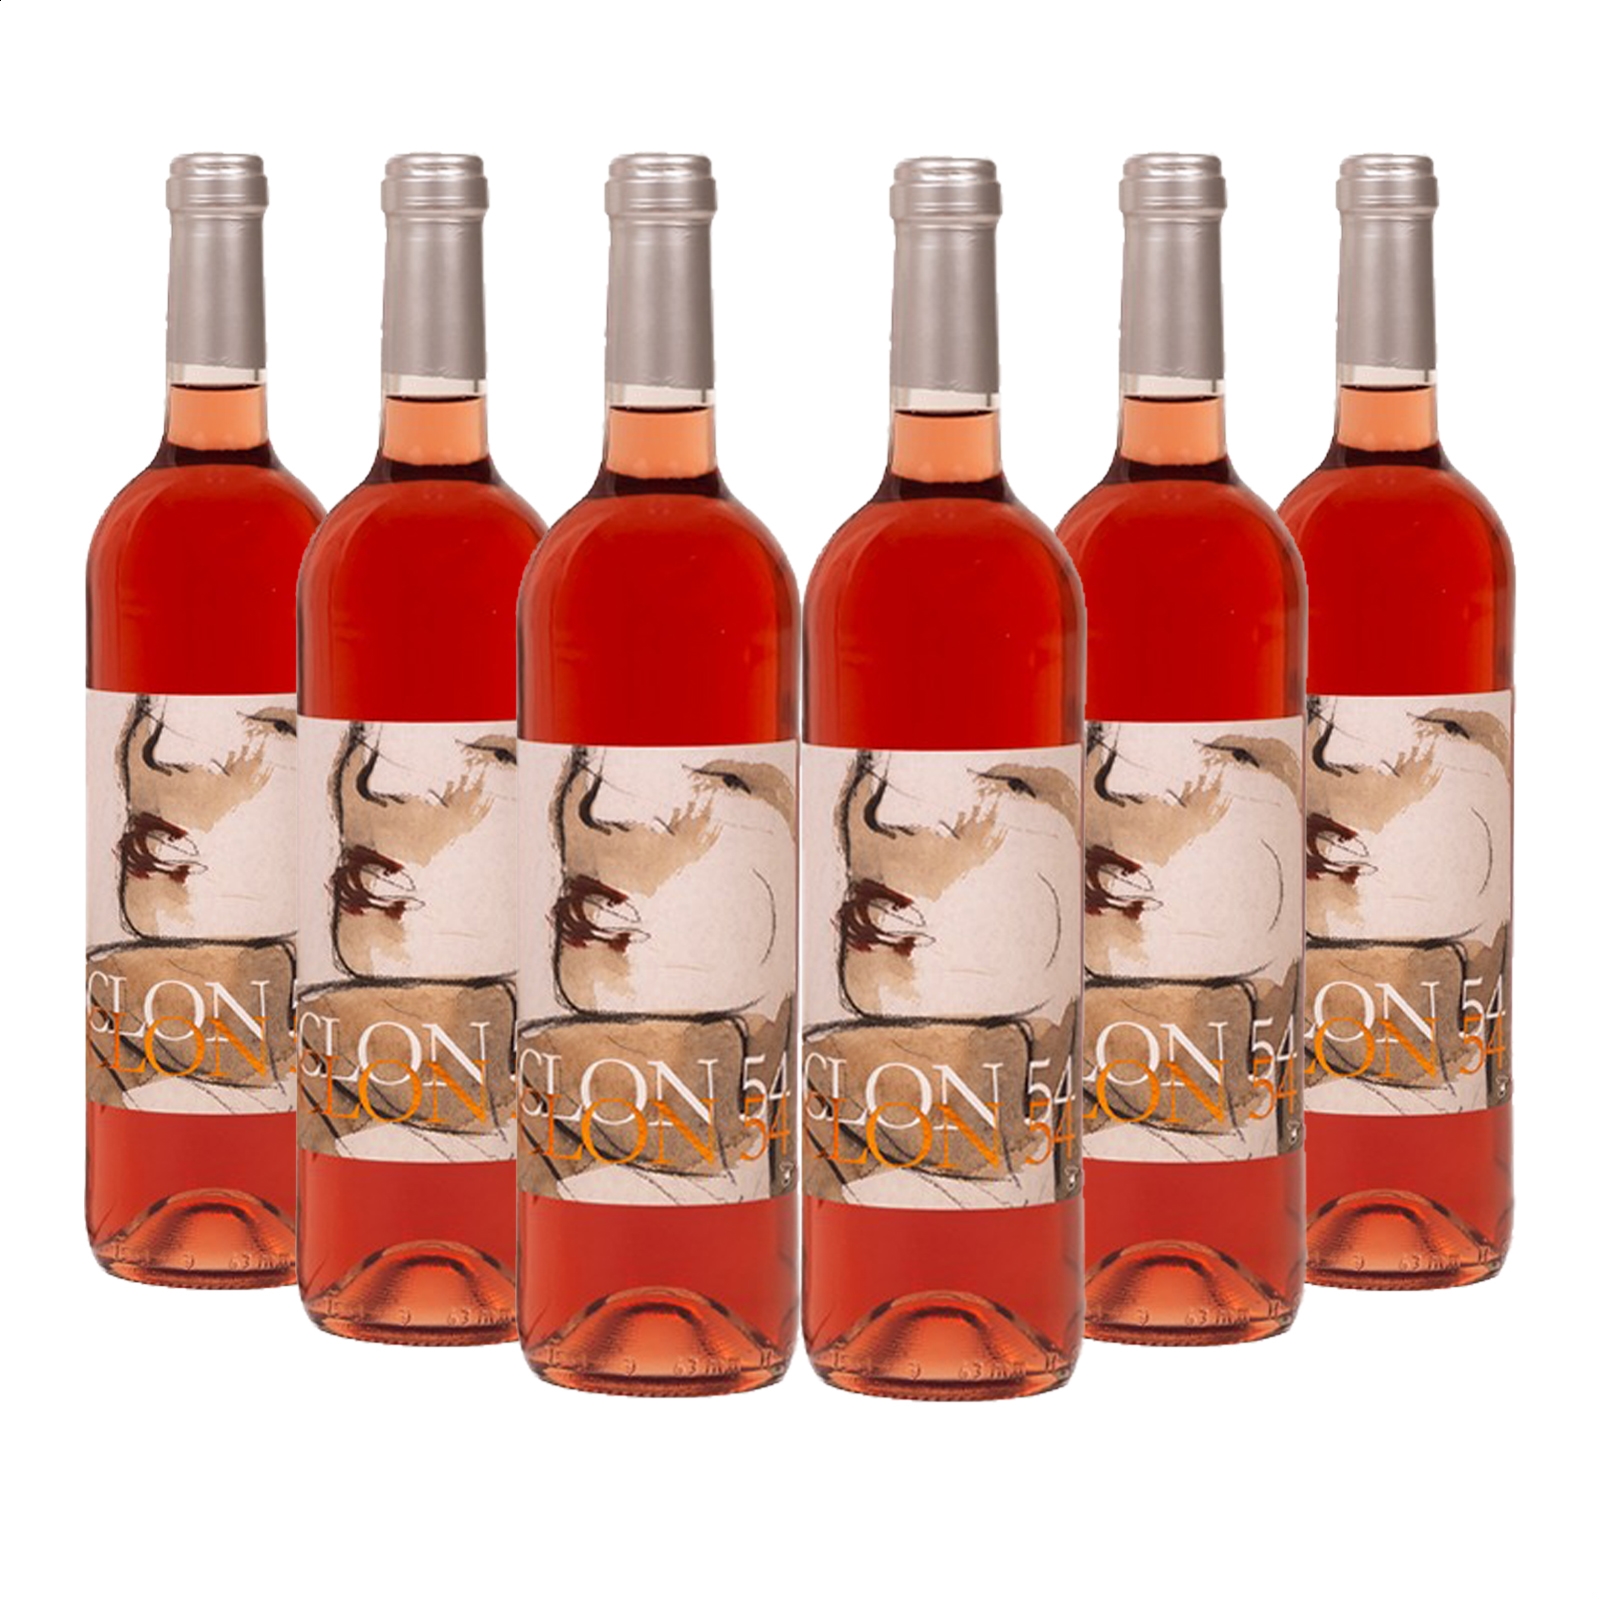 Santo Cristo del Prado - Clon 54 vino rosado Cencibel IGP Vino de la Tierra de Castilla 75cl, 6uds